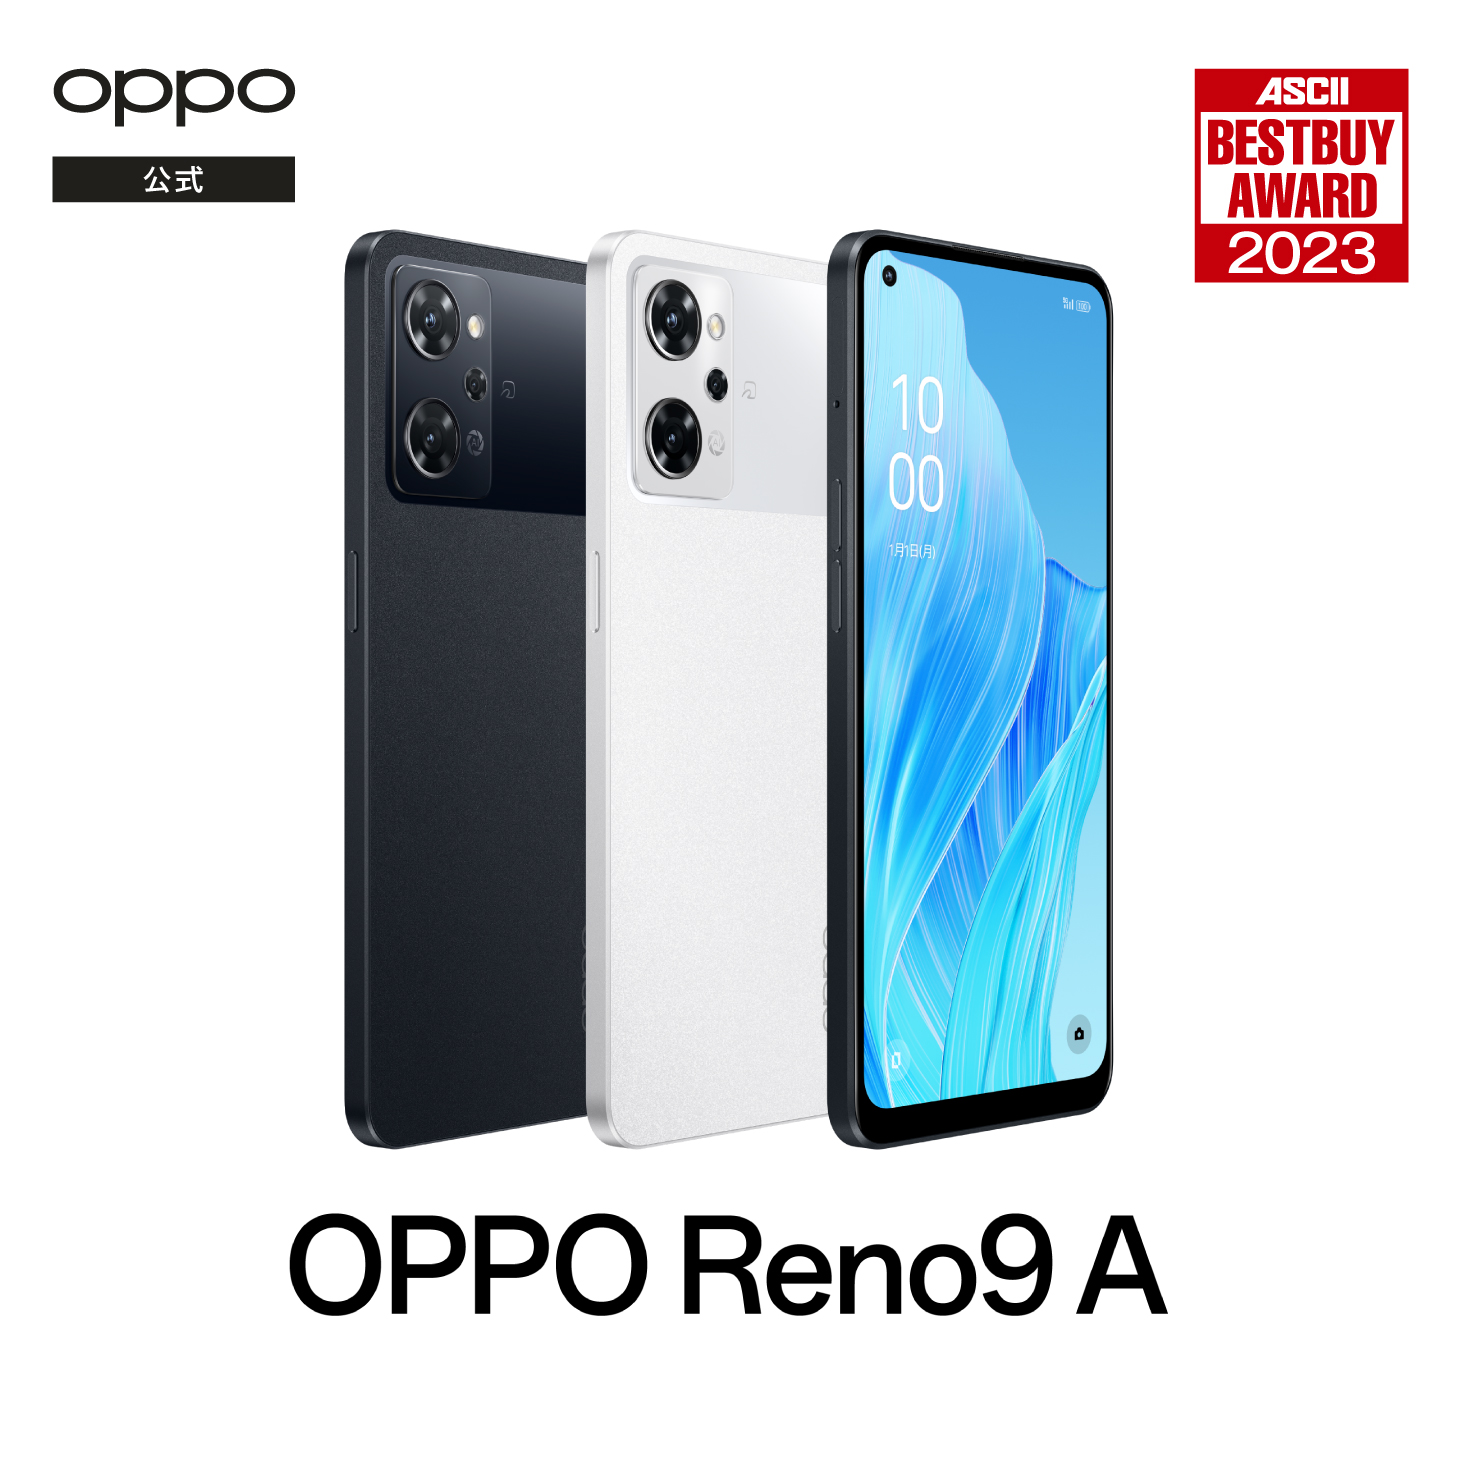 耐衝撃ハイブリッドケースプレゼント中】OPPO Reno9 A SIMフリー 5G